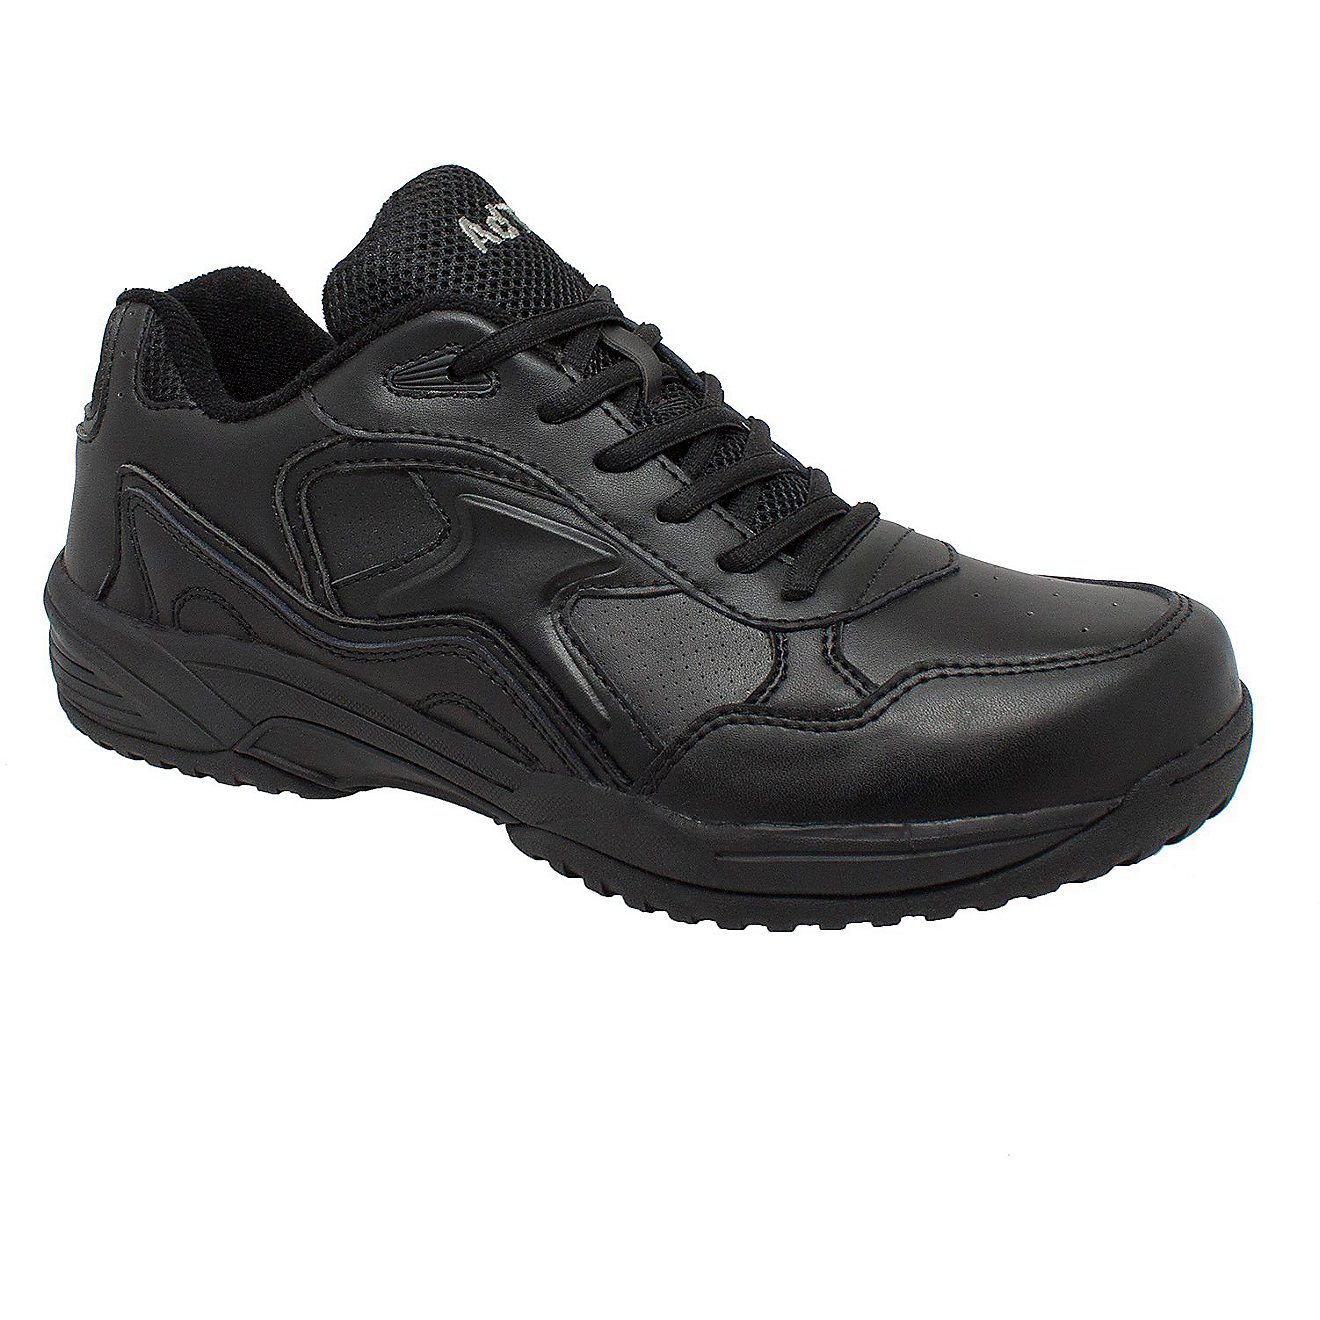 AdTec Men's Composite Toe Athletic Uniform Work Shoes                                                                            - view number 2